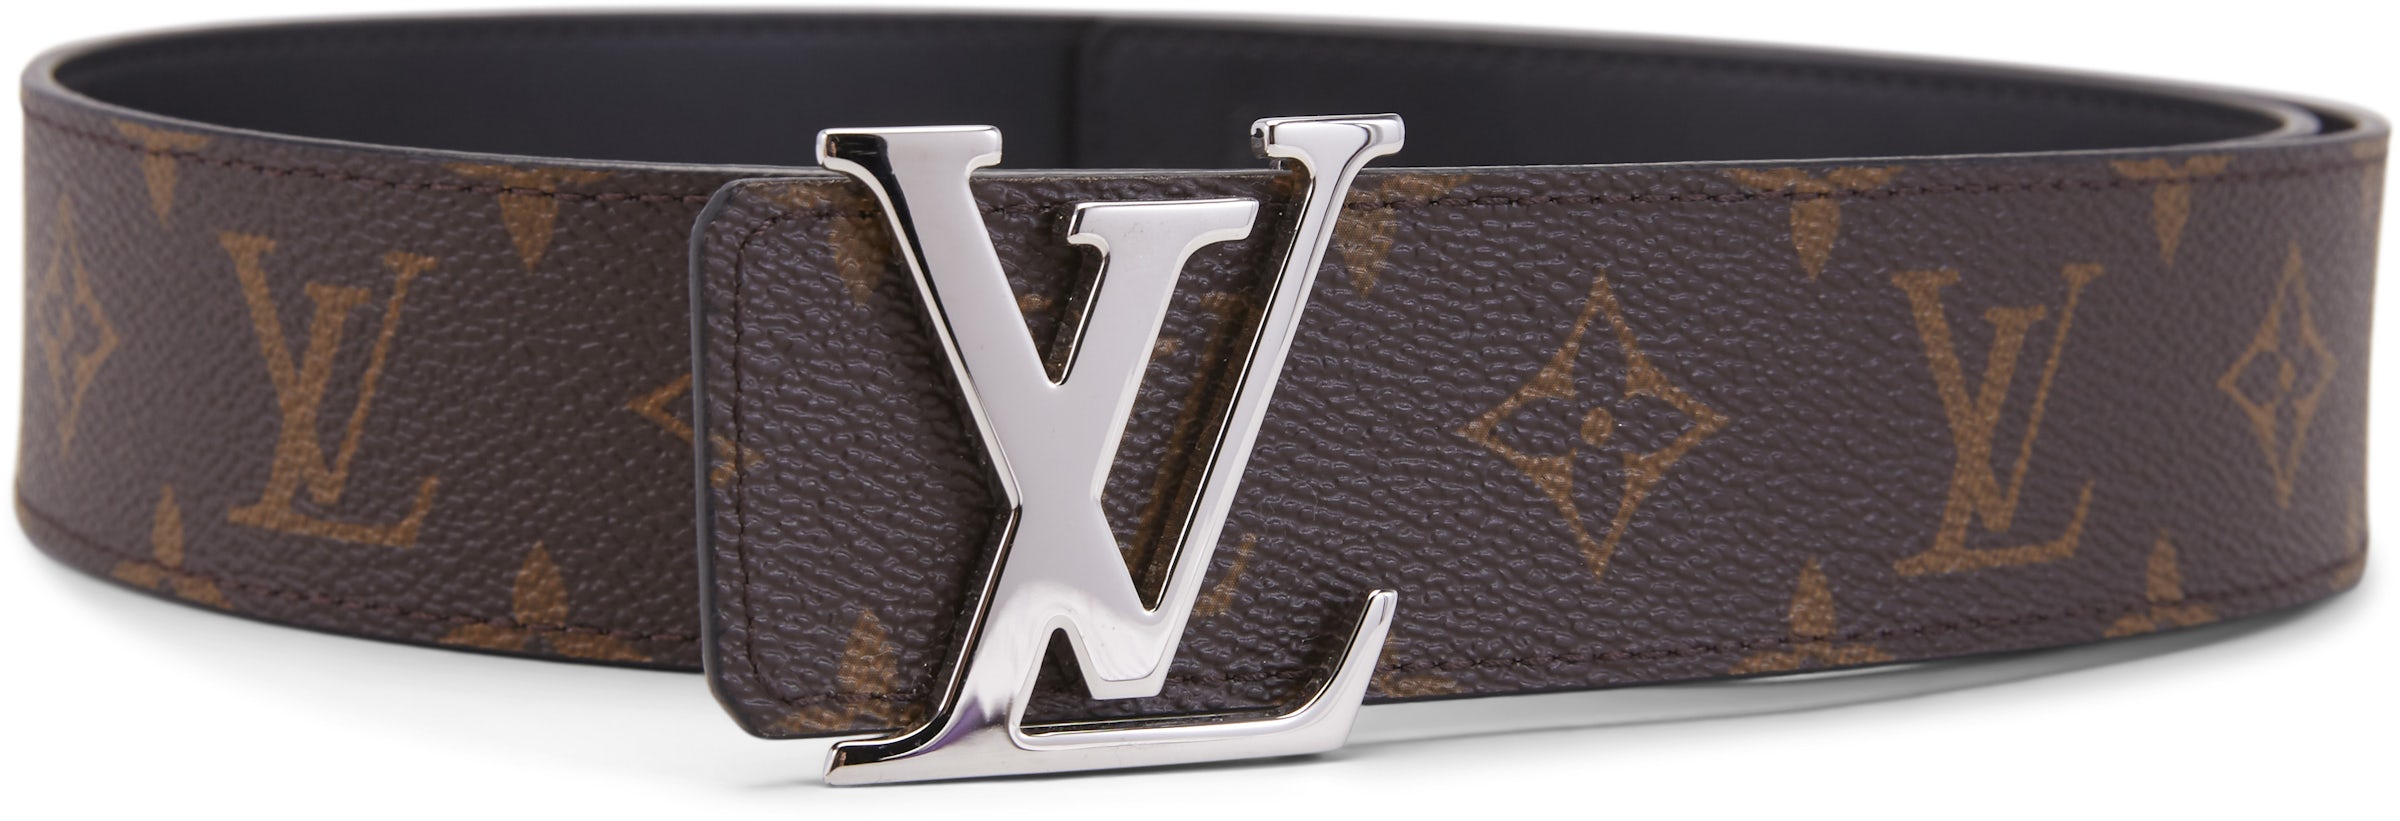 Louis Vuitton Signature Belt Monogram Chain MCA 35MM Orange in